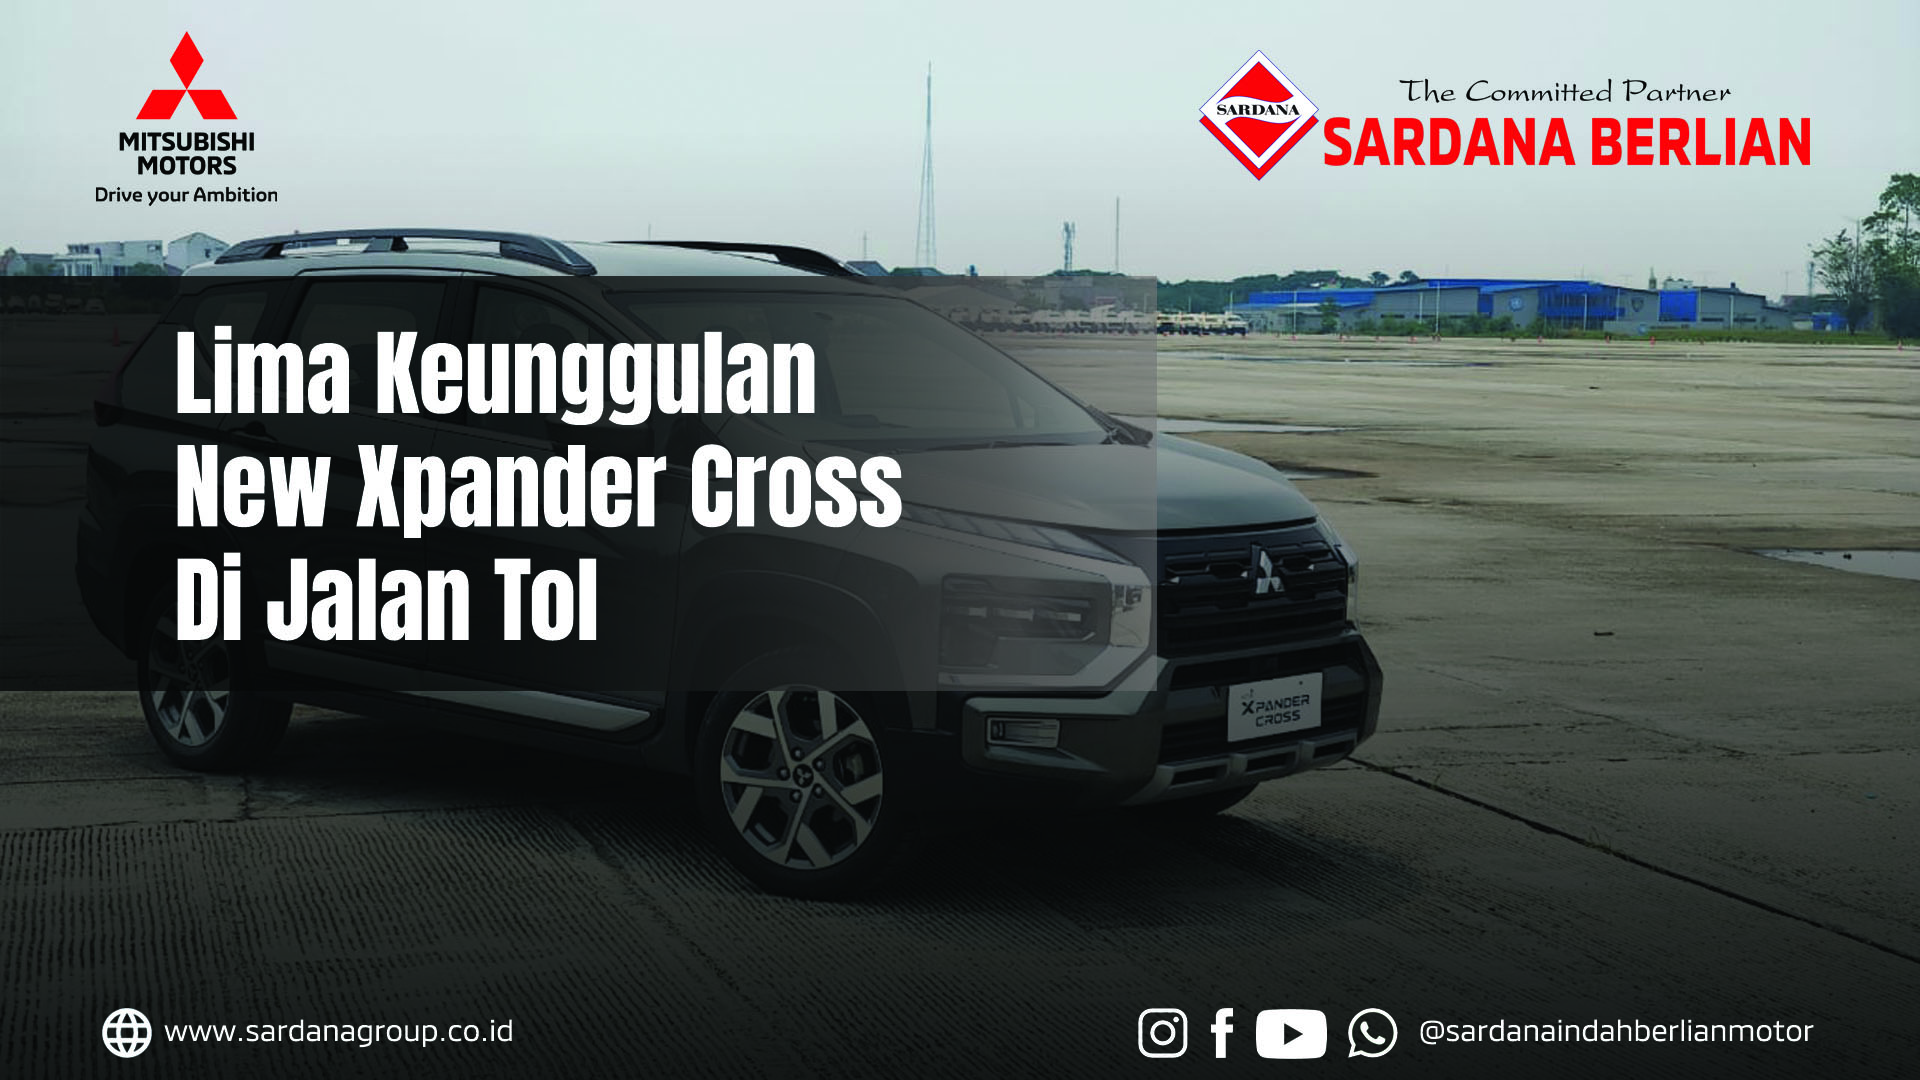 Lima Keunggulan Mitsubishi New Xpander Cross di Jalan Tol!